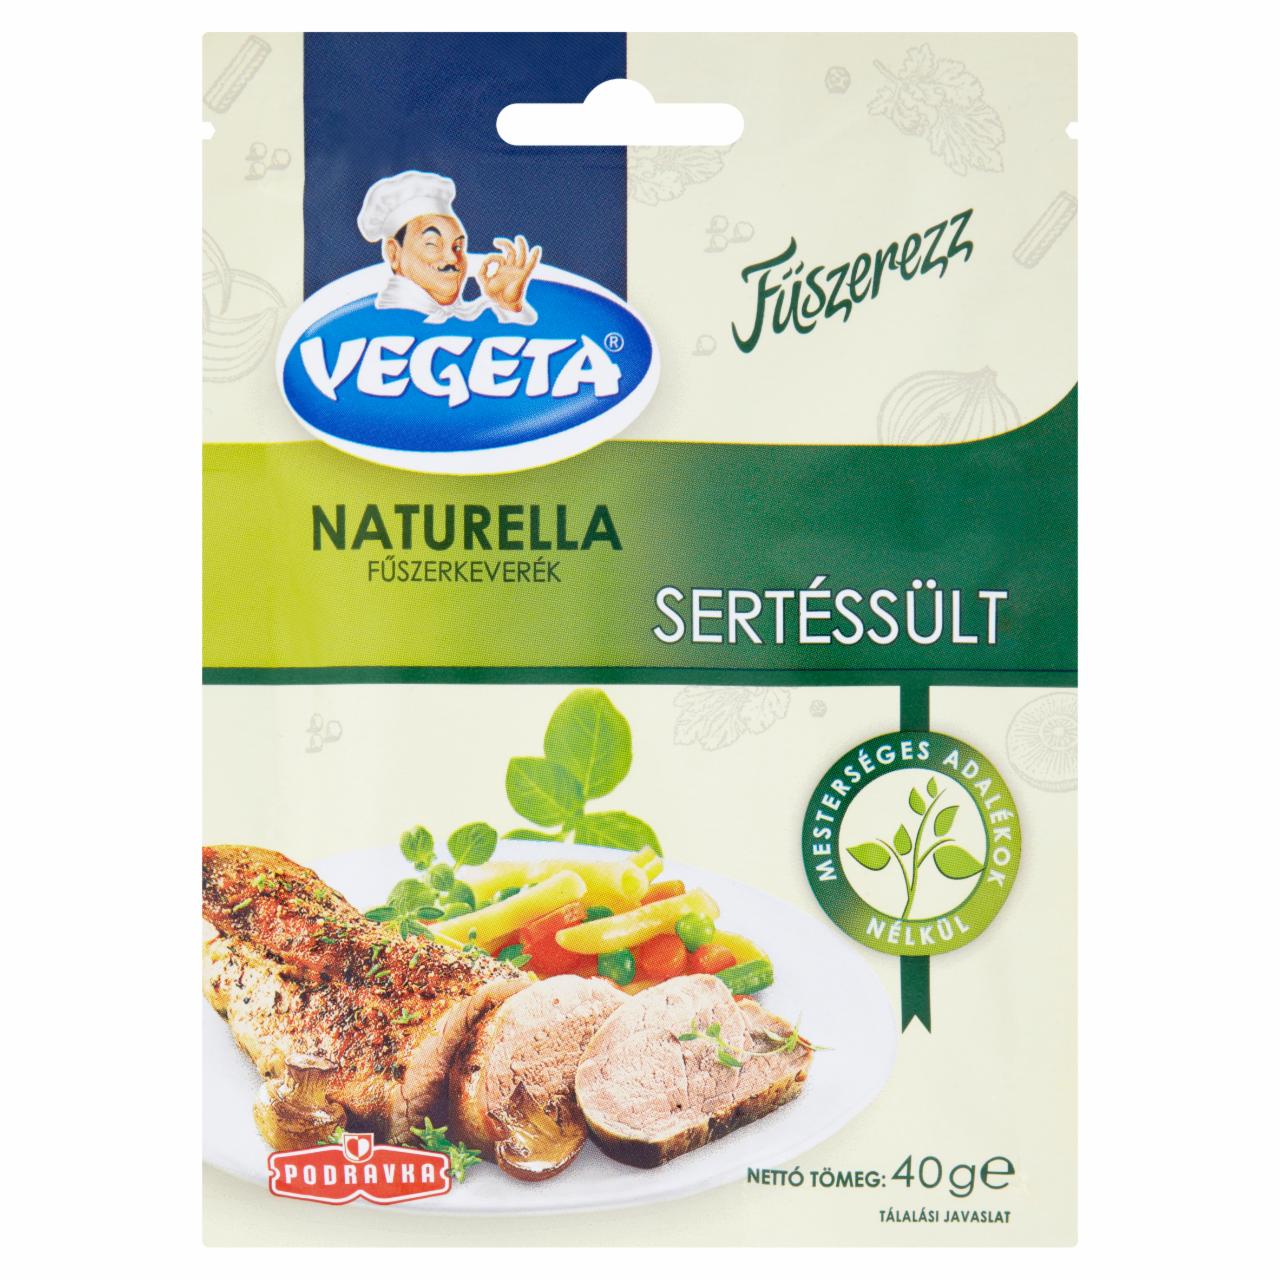 Képek - Vegeta Naturella sertéssült fűszerkeverék 40 g